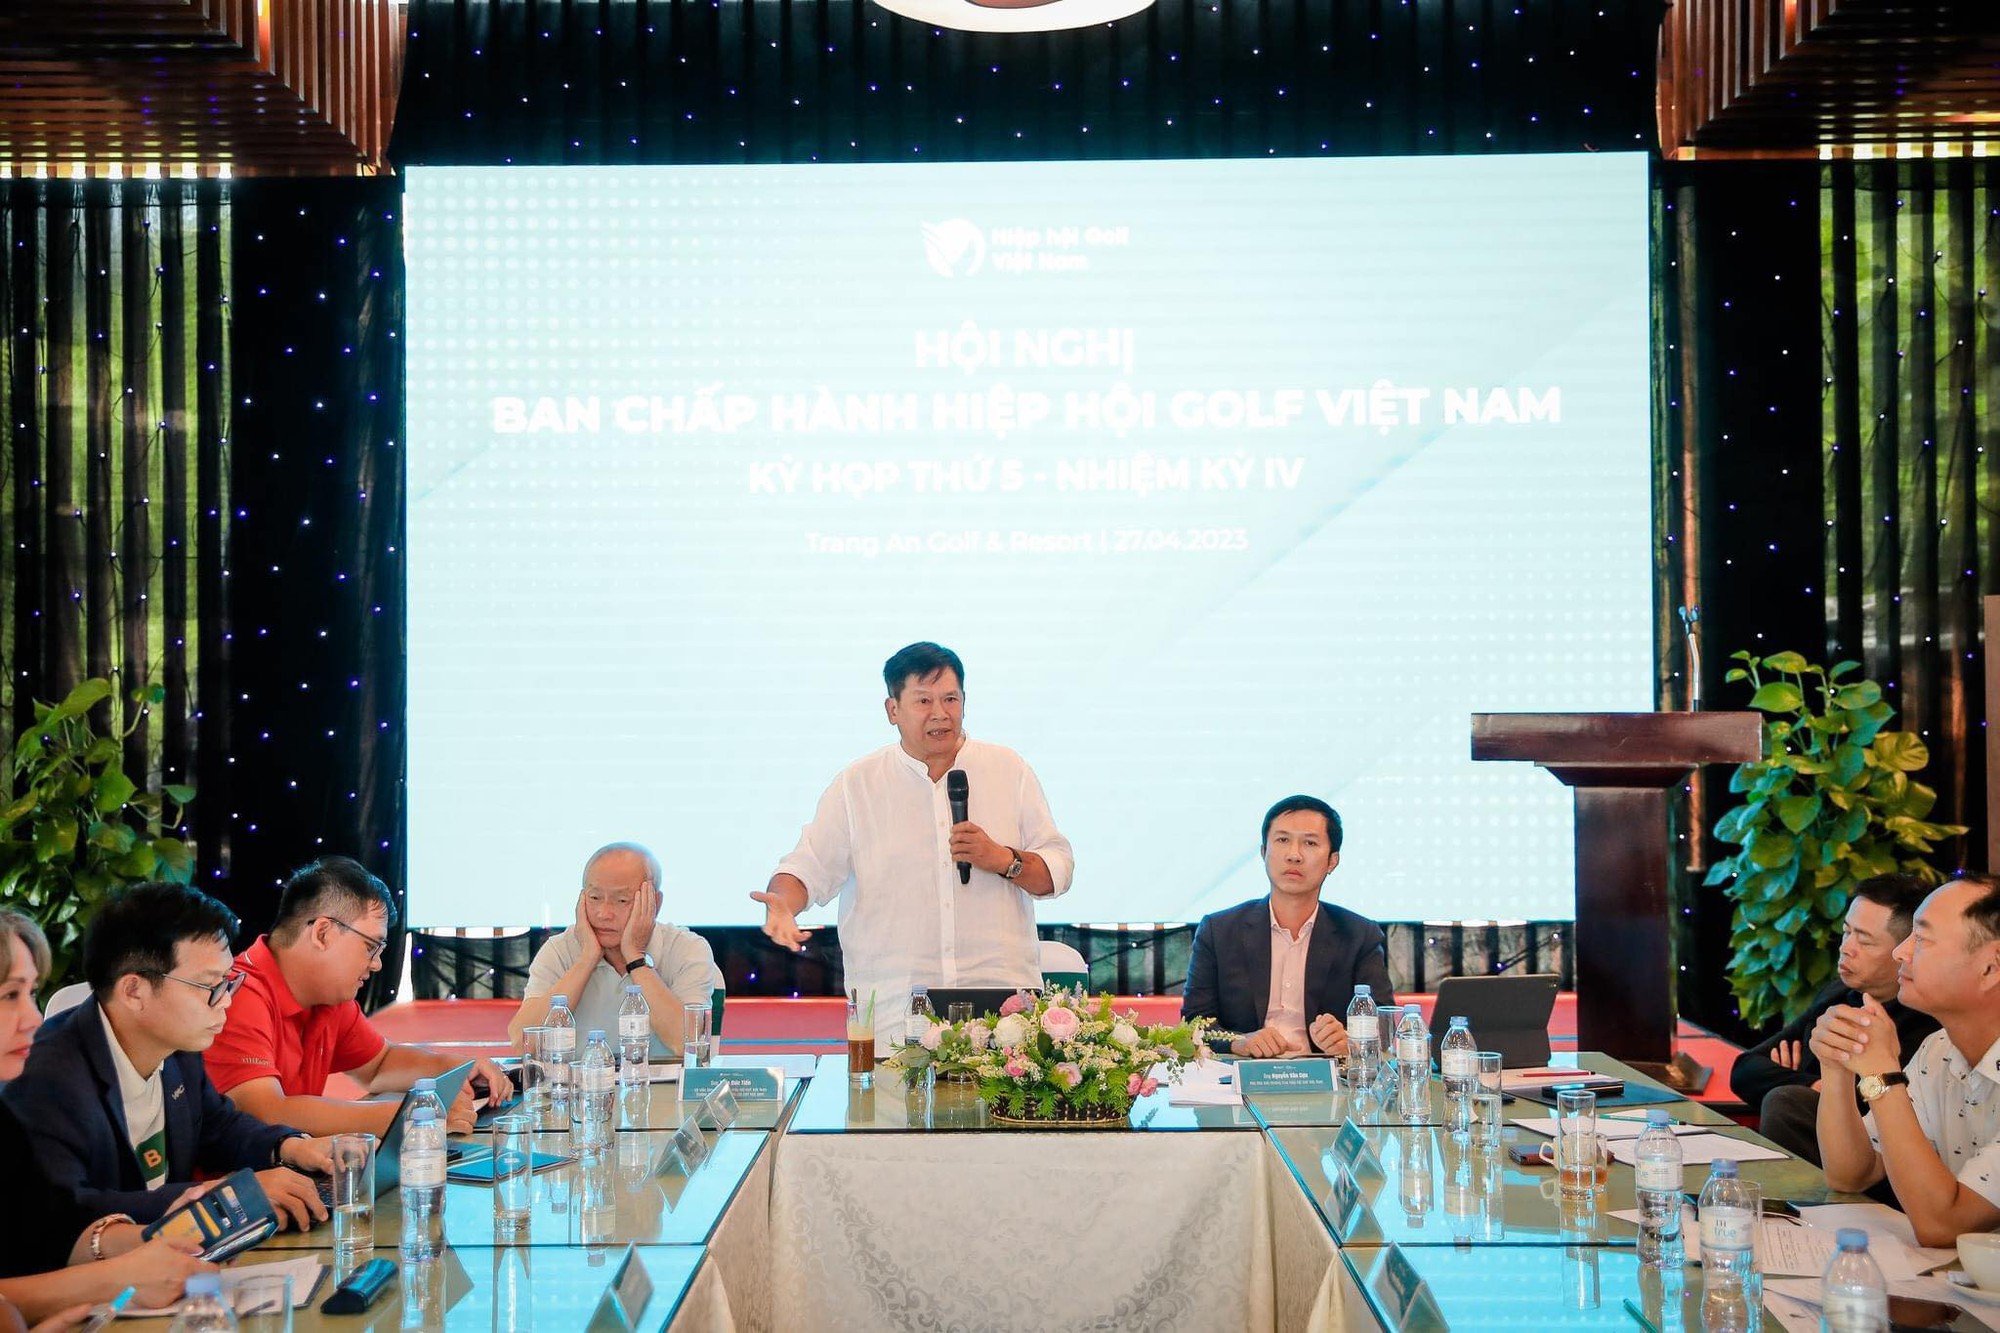 VGA khẳng định VGS Holding là đối tác công nghệ duy nhất quản lý khai thác vHandicap trên lãnh thổ Việt Nam  - Ảnh 2.